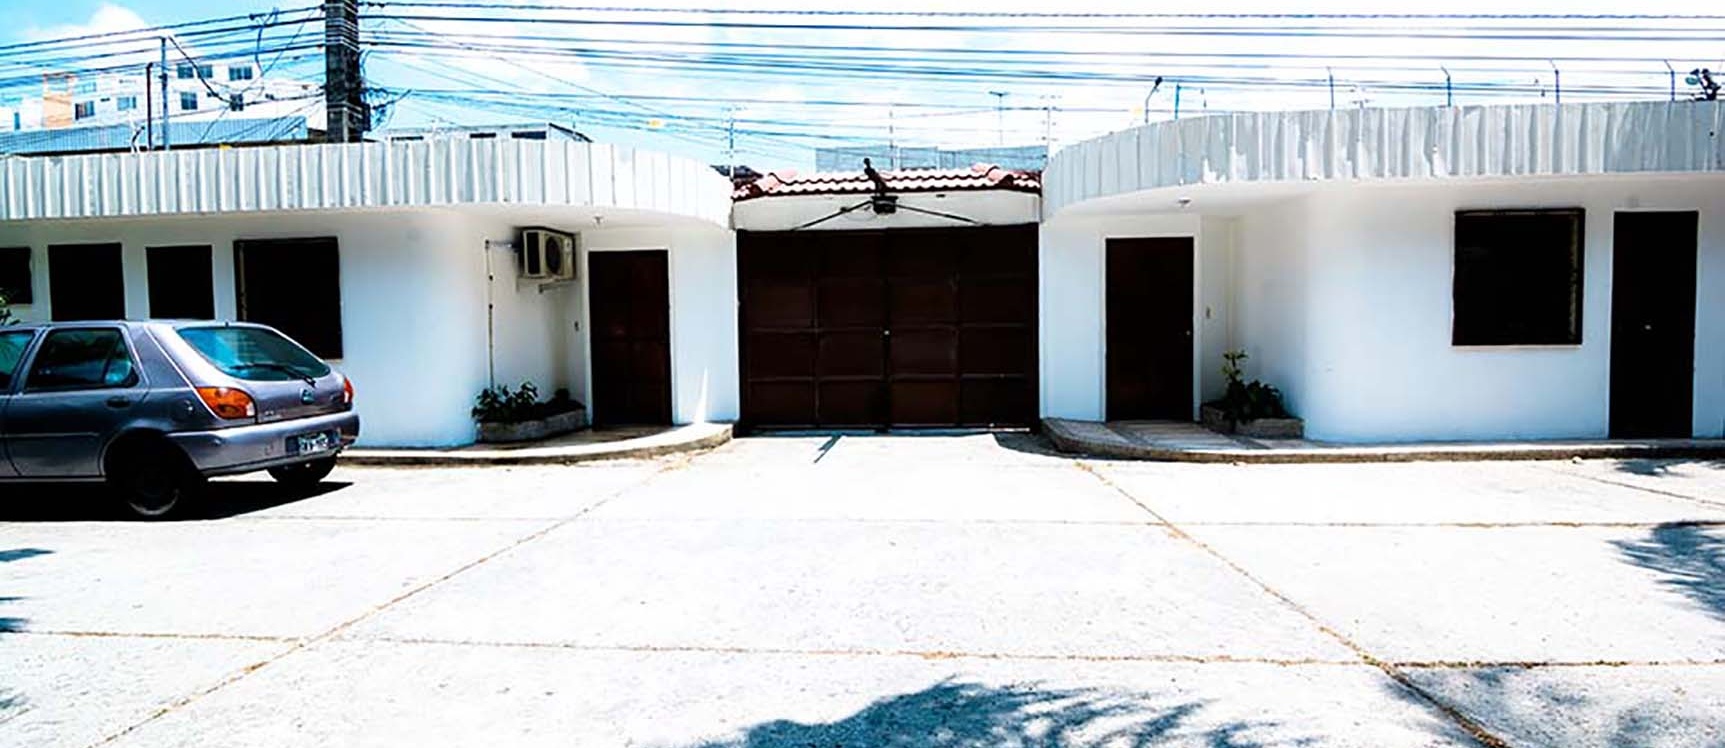 GeoBienes - Casa en venta en Santa Cecilia Ceibos Guayaquil - Plusvalia Guayaquil Casas de venta y alquiler Inmobiliaria Ecuador